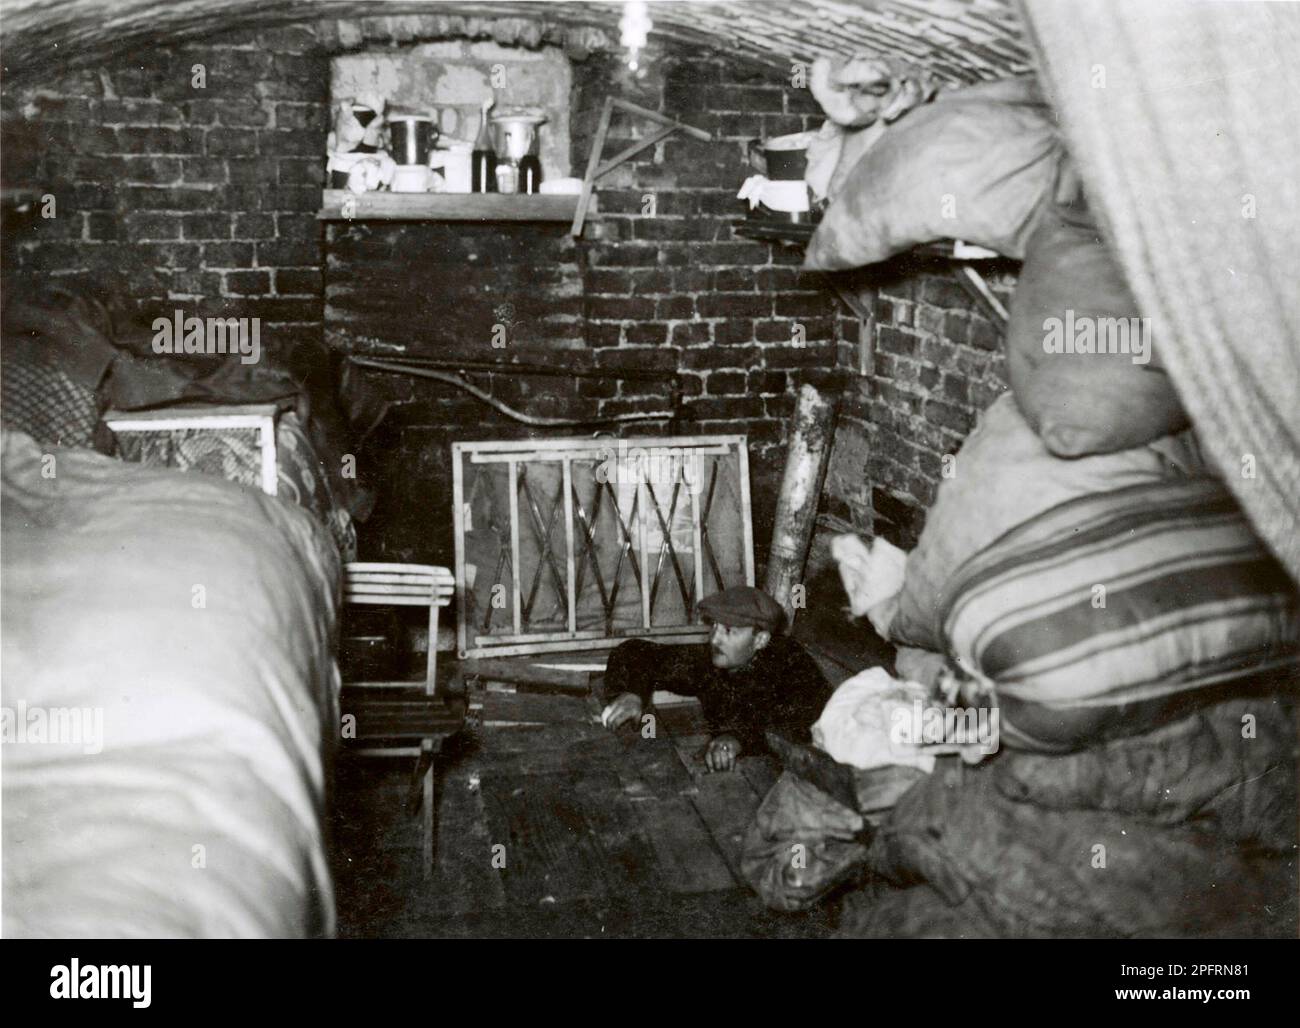 Im Januar 1943 kamen die nazis an, um die Juden des Warschauer Ghettos zu verhaften. Die Juden, die entschlossen waren, es zu bekämpfen, nahmen es mit selbstgemachten und primitiven Waffen auf die SS abgesehen. Die Verteidiger wurden hingerichtet oder deportiert, und das Ghetto-Gebiet wurde systematisch abgerissen. Dieses Ereignis ist bekannt als Ghetto-Aufstand. Dieses Bild zeigt einen unterirdischen Bunker, in dem die Reistance-Kämpfer wohnten. Dieses Bild stammt aus der deutschen Fotoaufzeichnung des Ereignisses, bekannt als Stroop-Bericht. Stockfoto